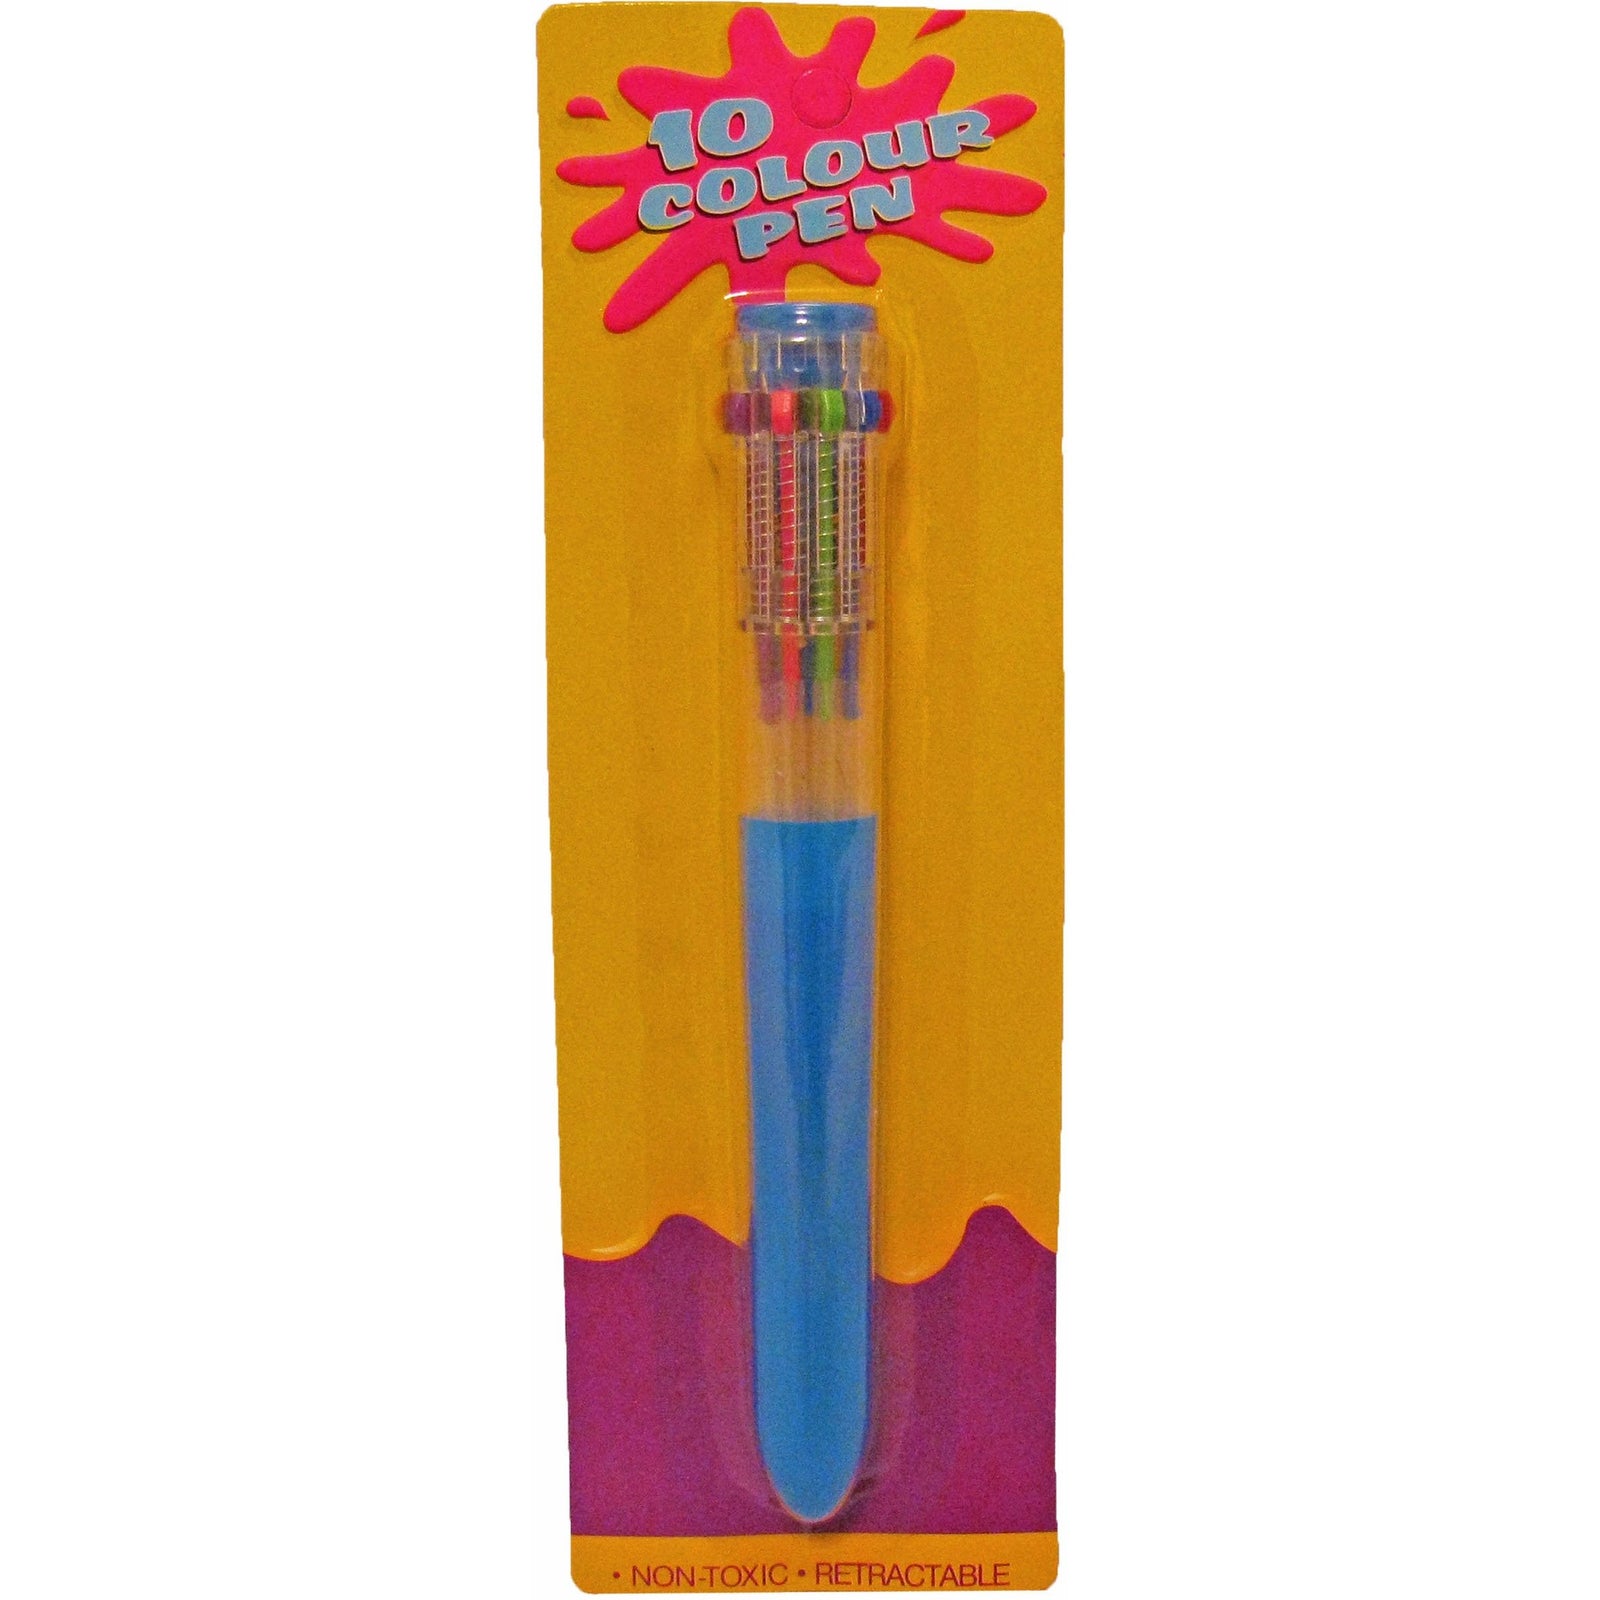 10 Color Shuttle Pen (pen body color varies)